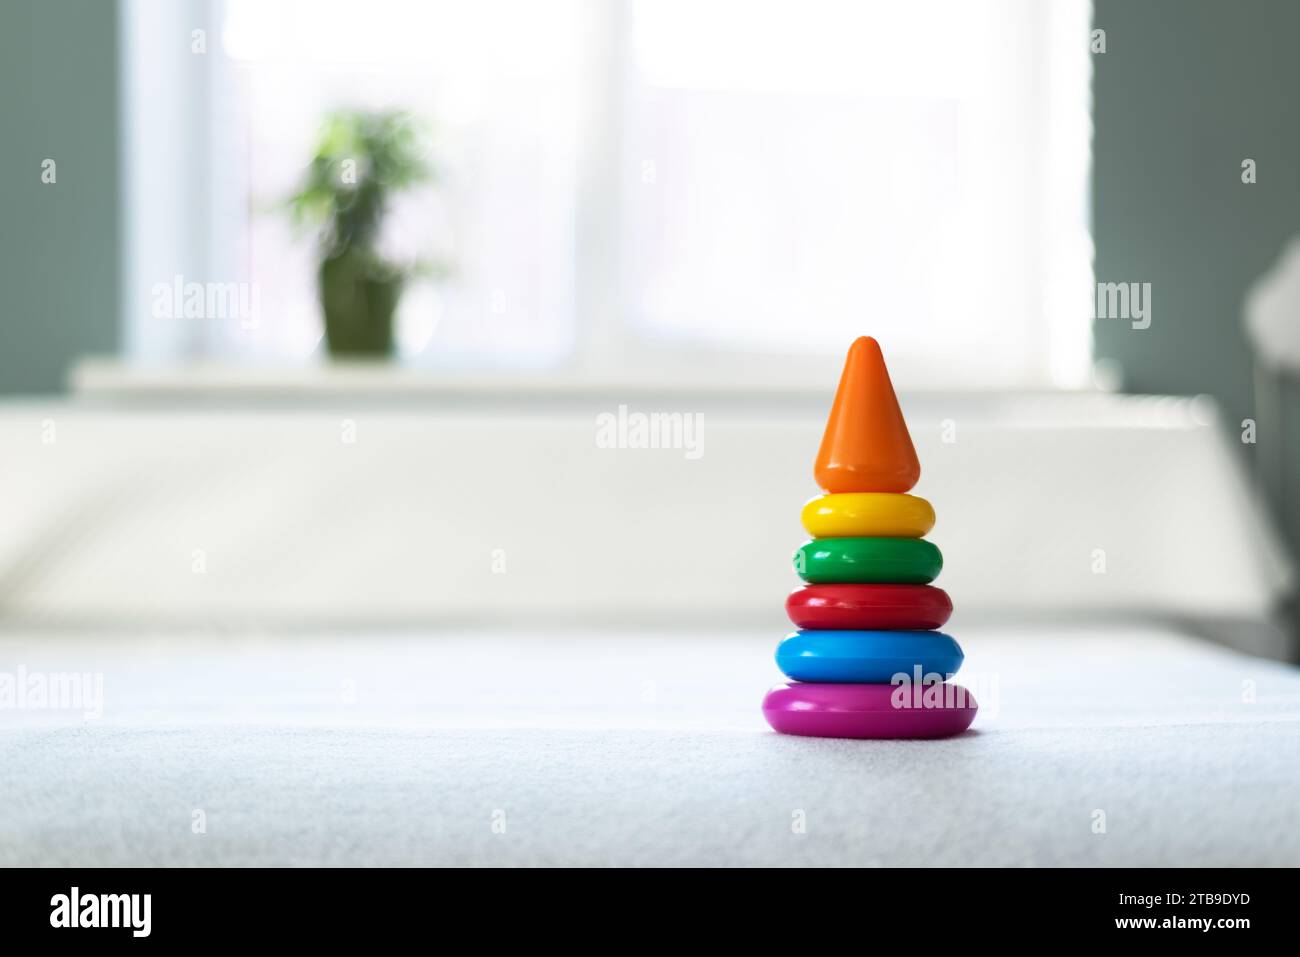 Jouet pyramidal en plastique multicolore dans la salle de jeux pour enfants. Concept d'enfance heureuse Banque D'Images